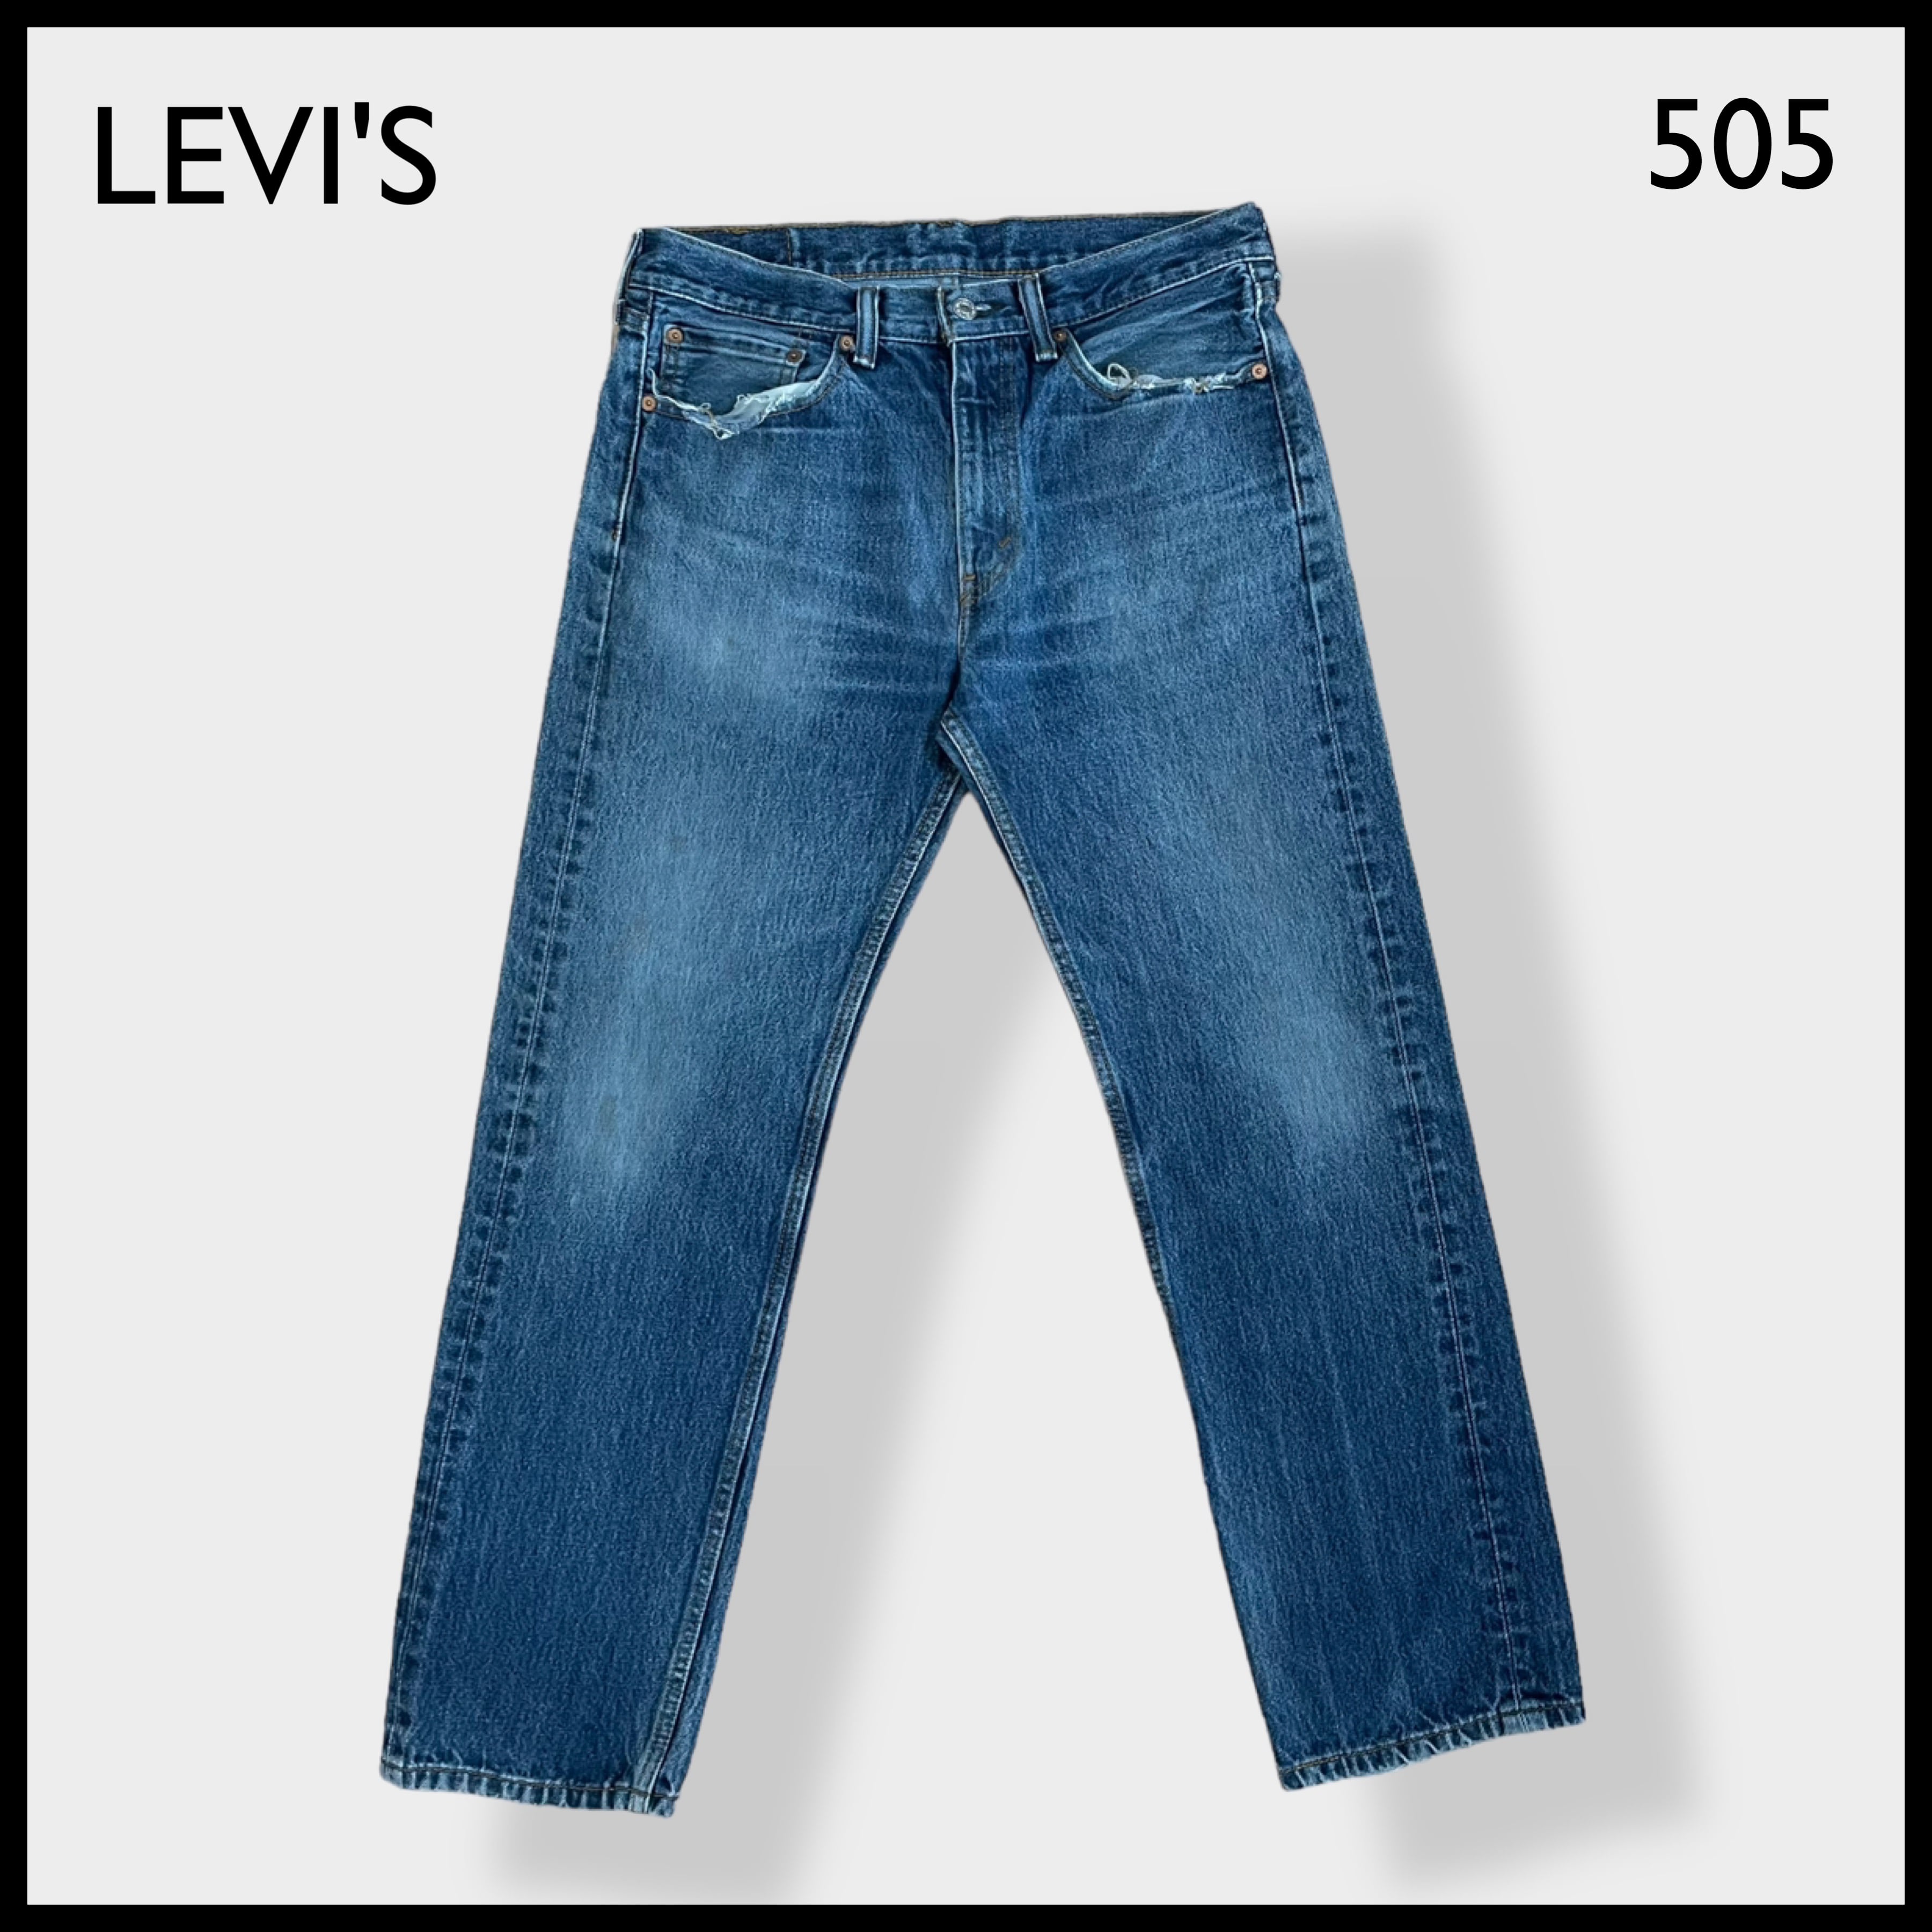 levis 505 w32 l30